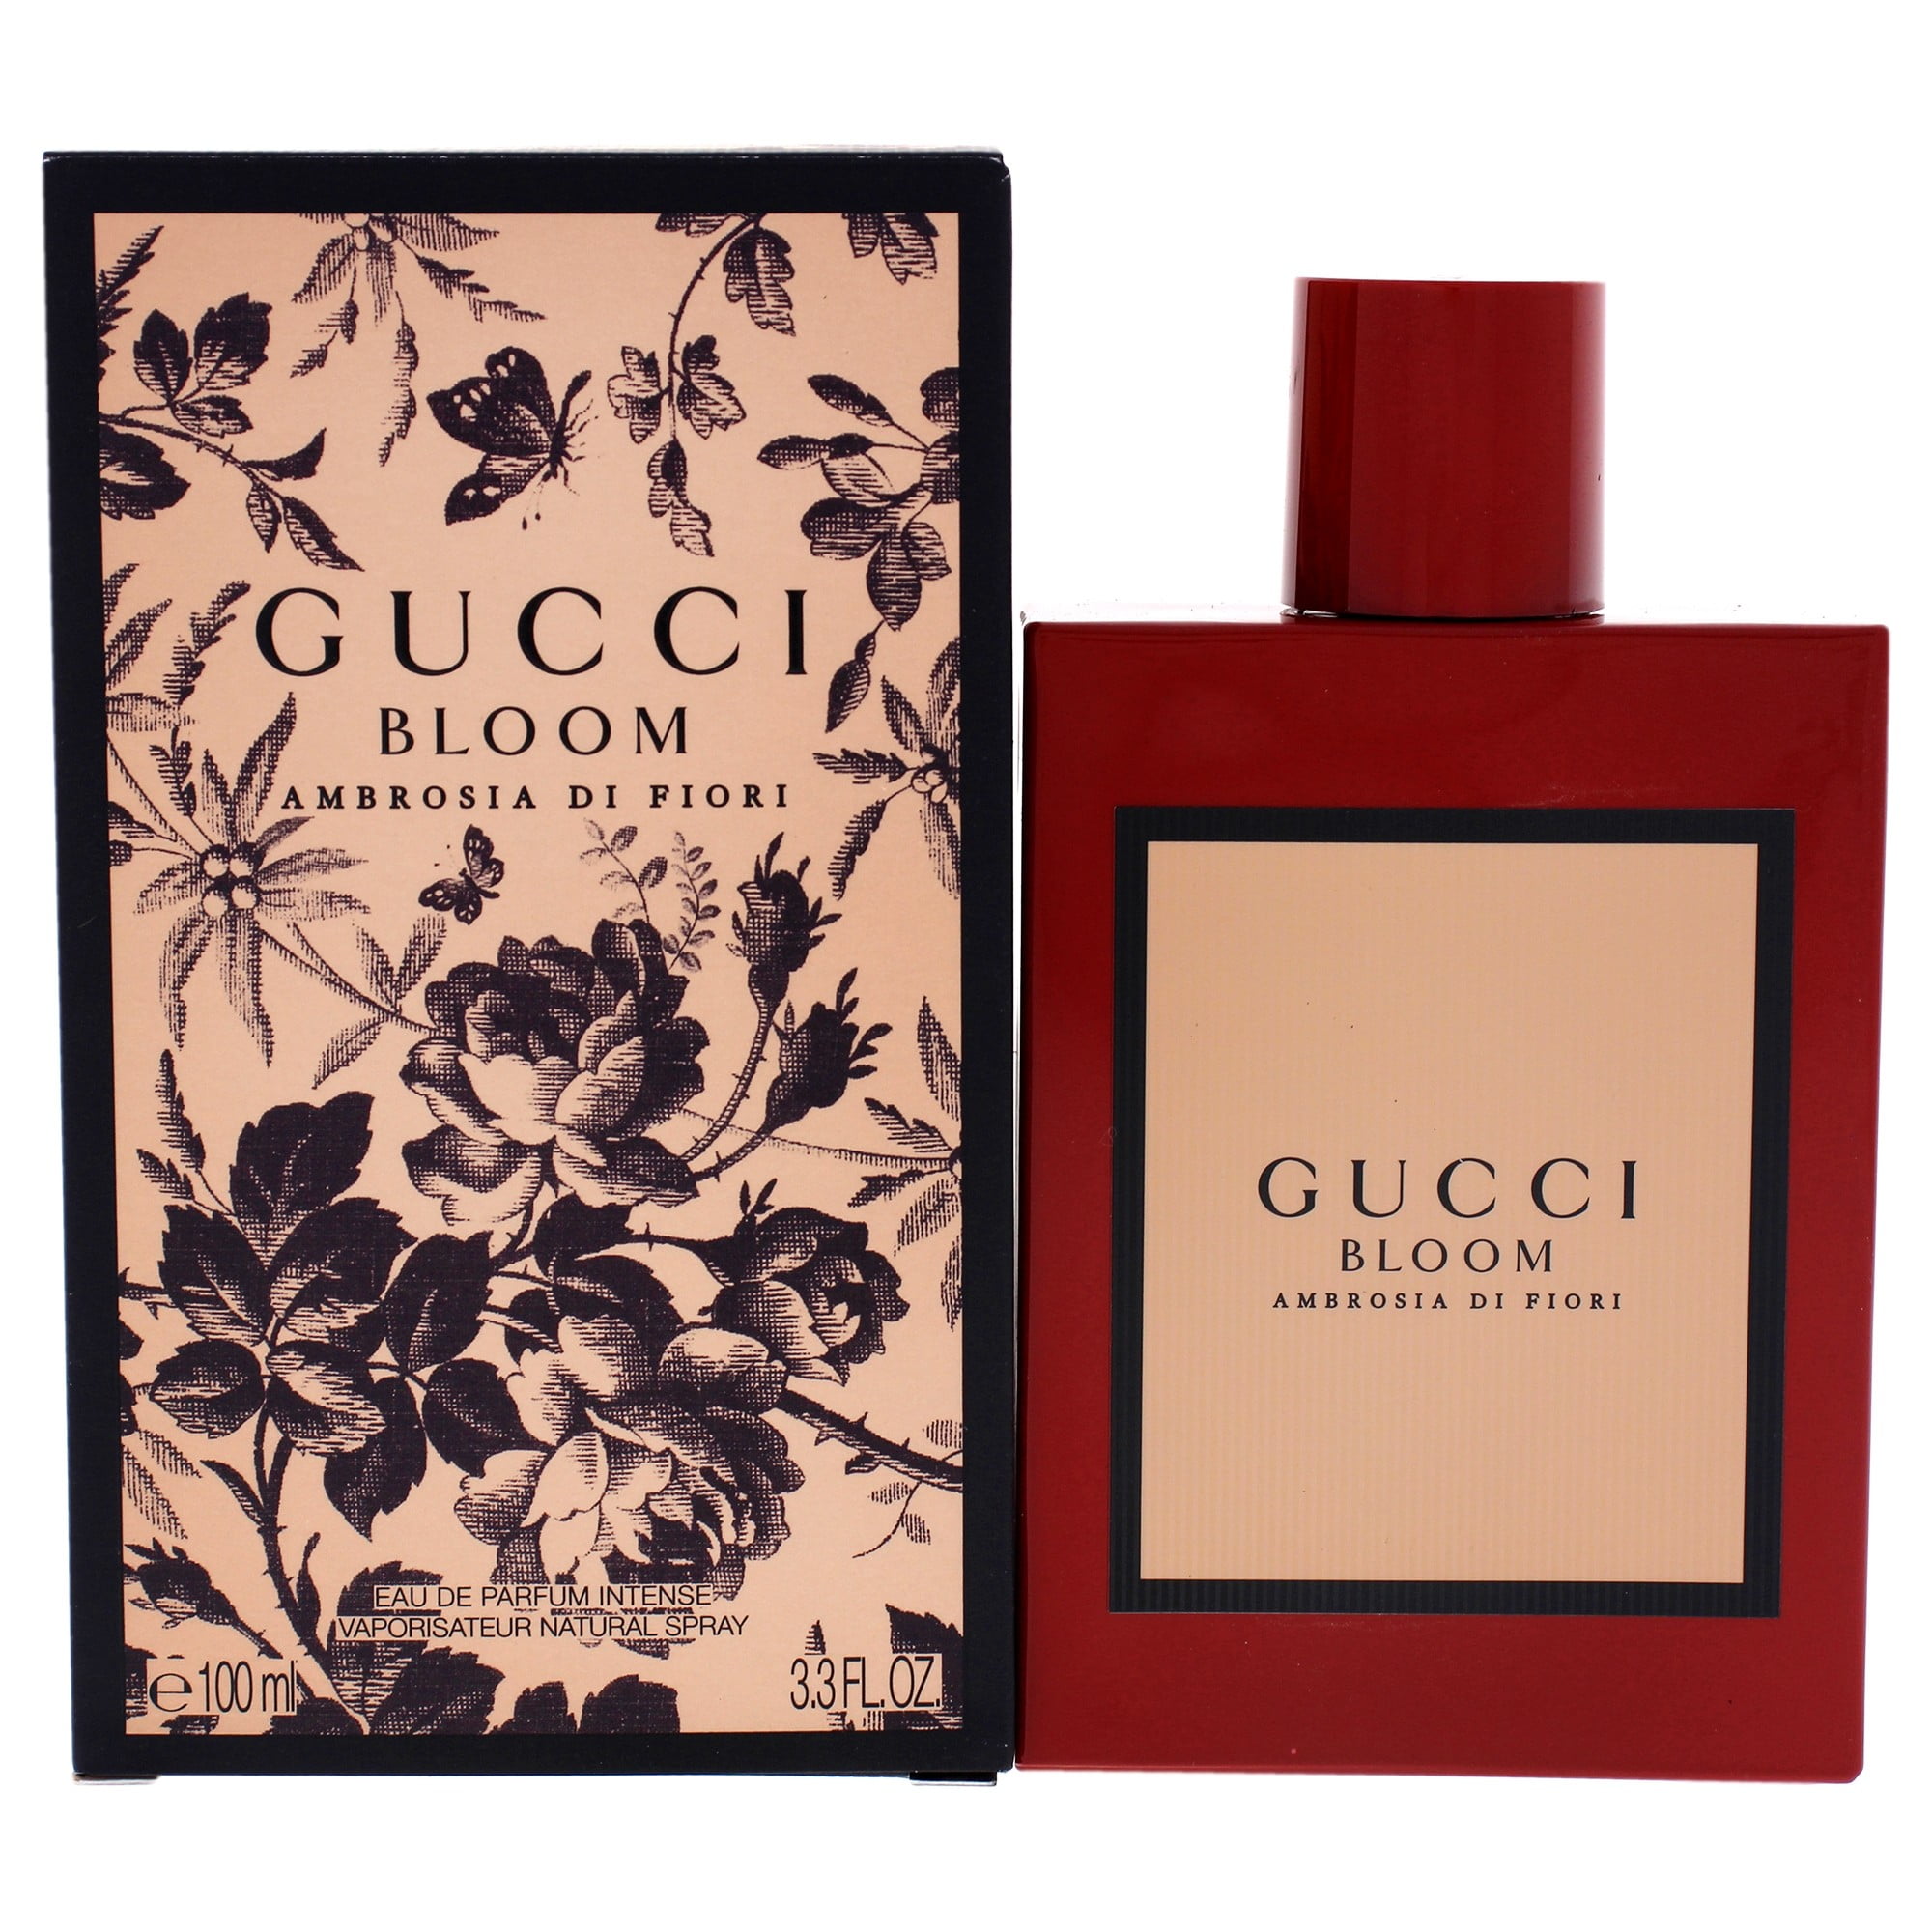 Bloom acqua di fiori. Gucci Bloom Gucci, 100ml. Gucci Bloom intense EDP, 100 ml. Gucci Bloom intense Gucci. Gucci Bloom Eau de Parfum.